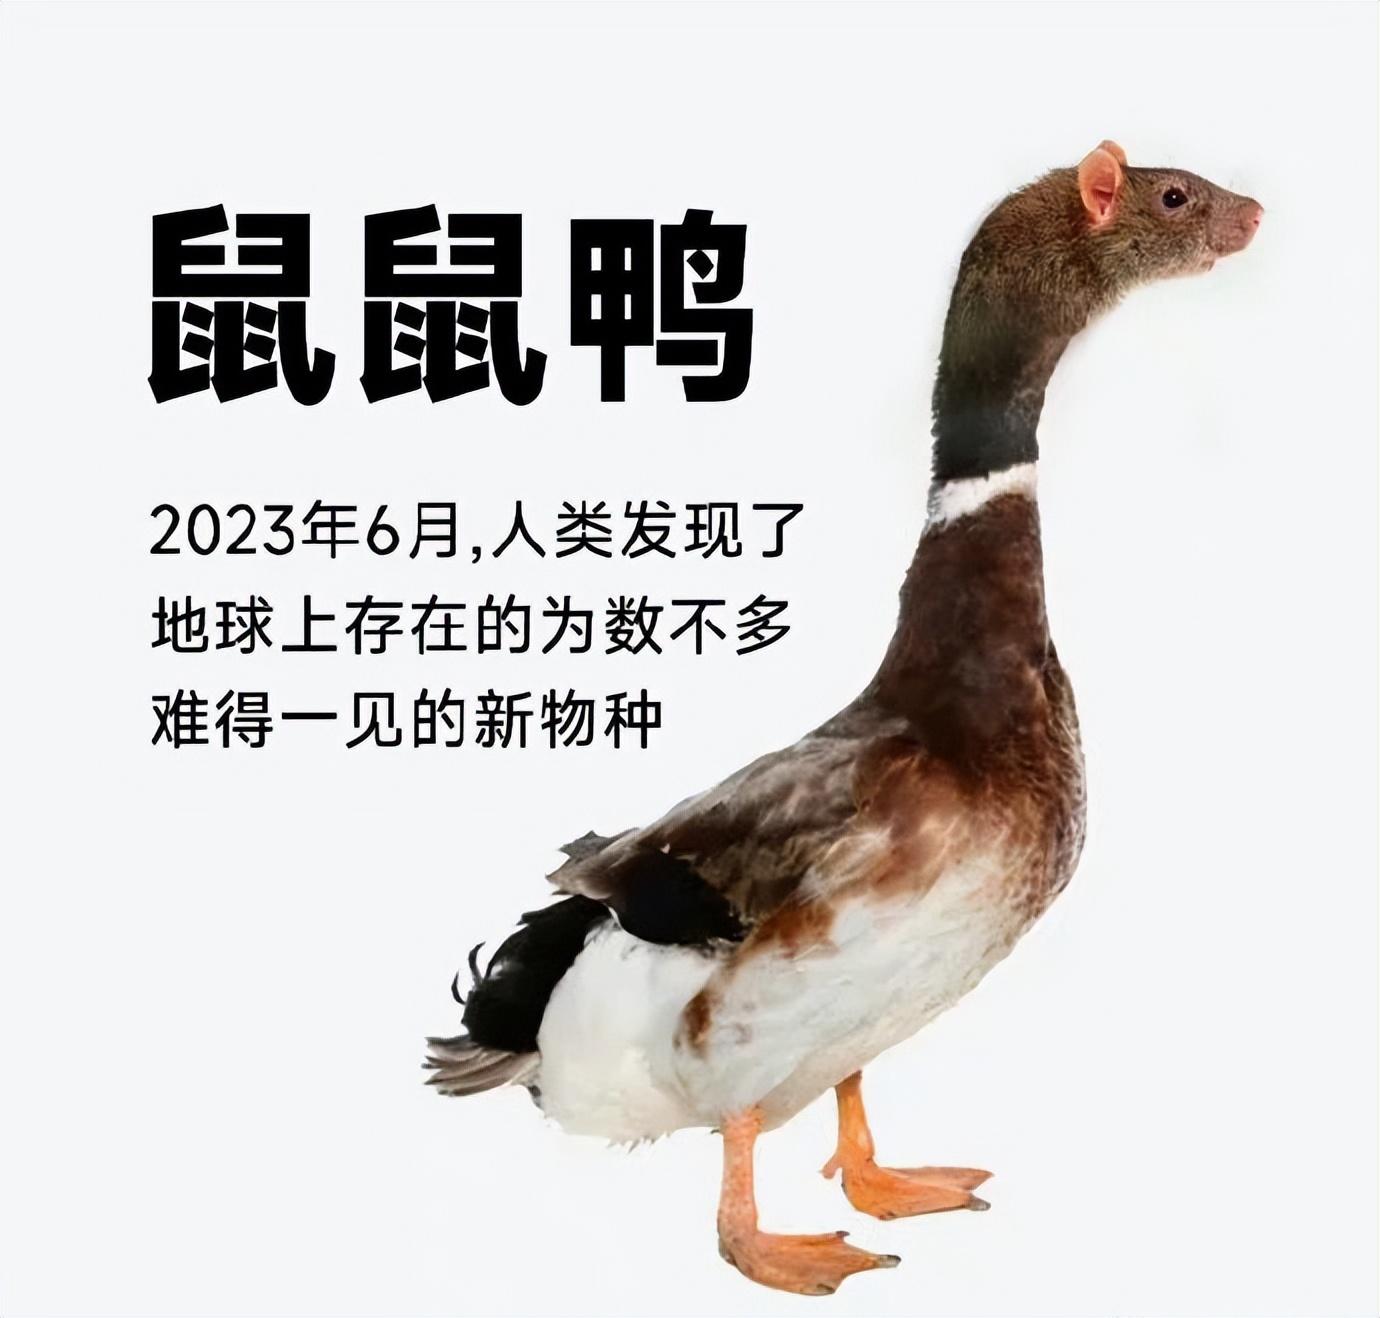 绝味鸭脖发布“性暗示”广告涉嫌违法，这还是你认识的鸭脖吗？